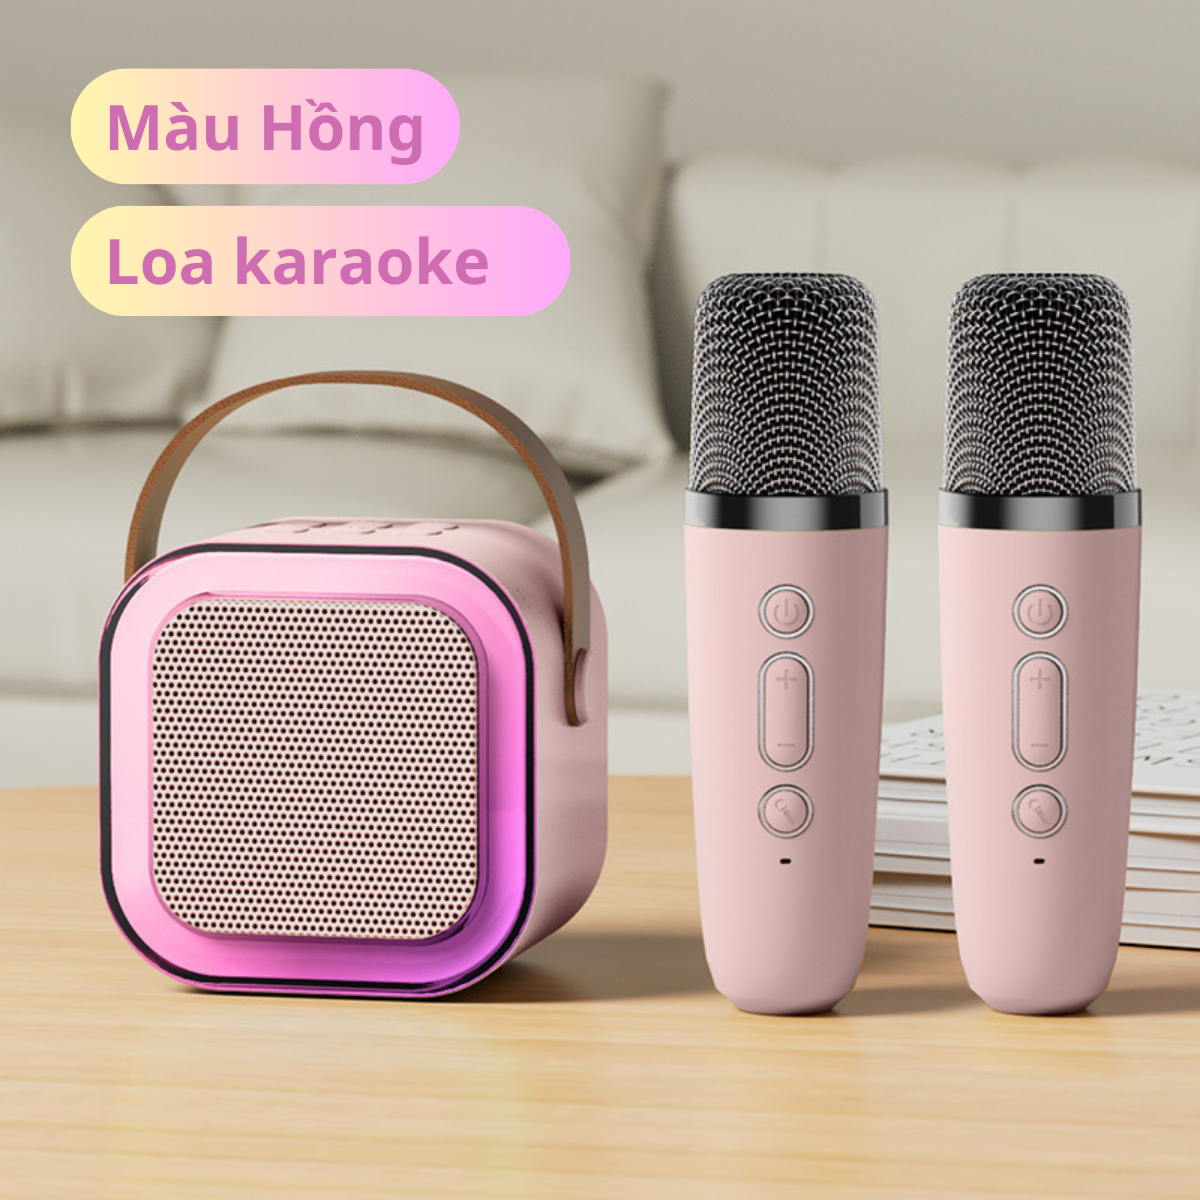 Bộ Loa Karaoke Kèm 2 Mic Hát Mini Không Dây Âm Thanh Tuyệt Đỉnh Bass Cực Chất Có Đèn Led Quanh Viền Kiểu Dáng Nhỏ Gọn